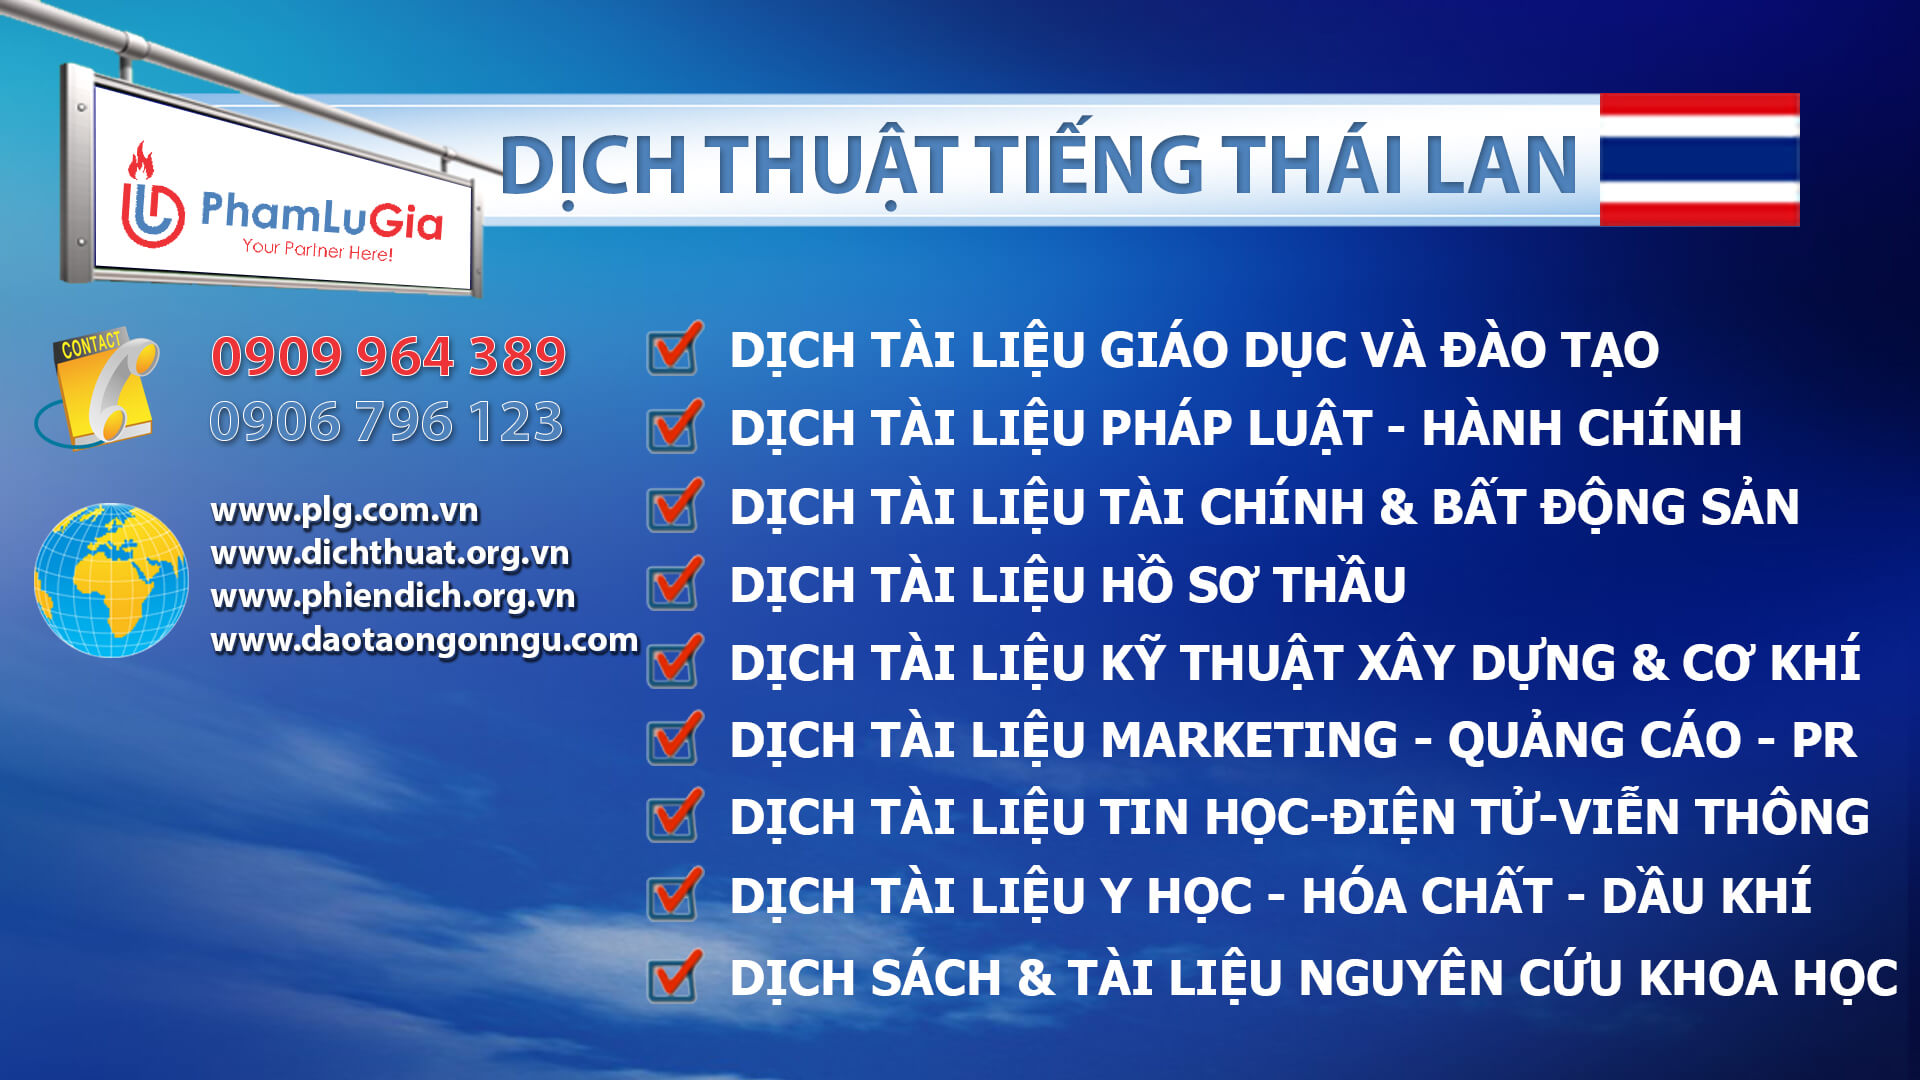 Dịch thuật tiếng Thái chuẩn